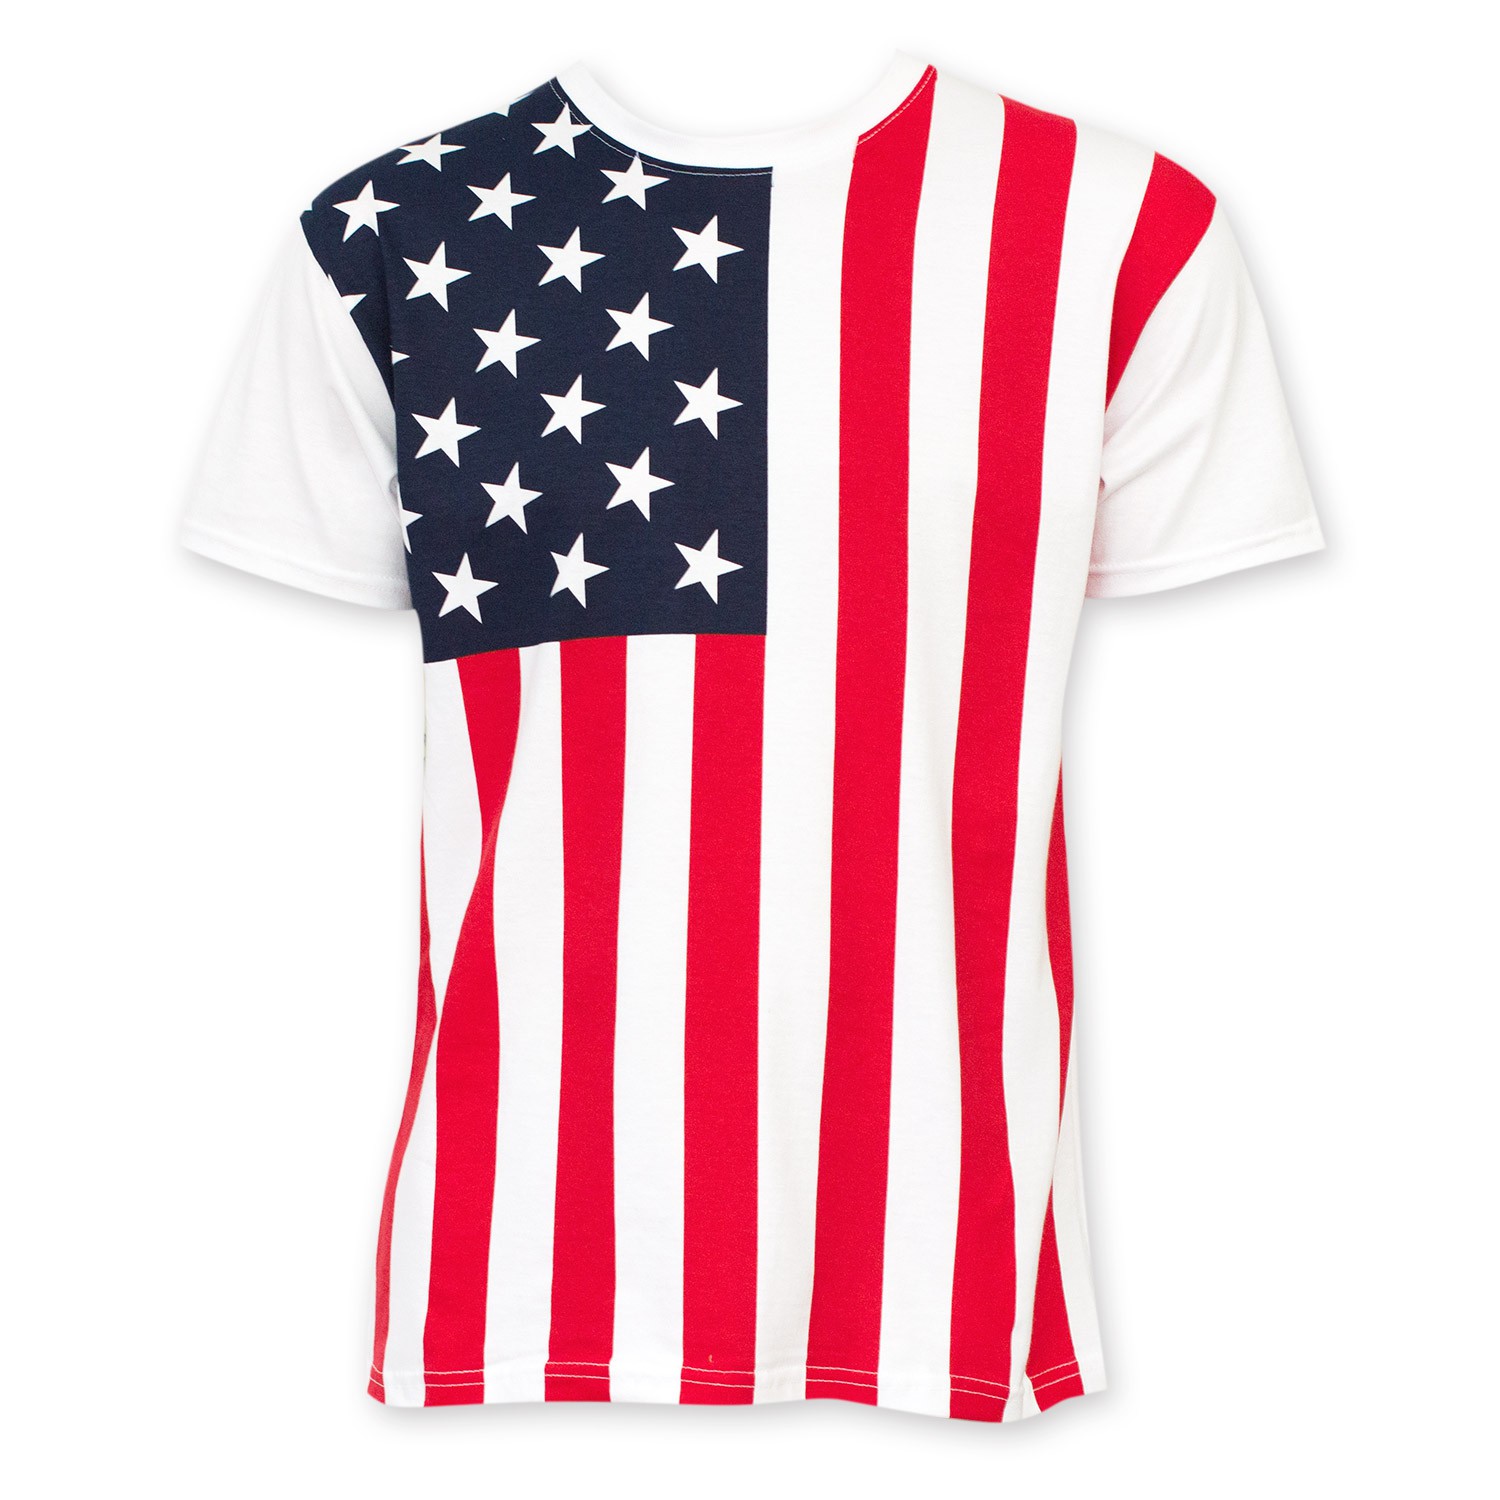 Bxzhiri United States of America Flag T-Shirt Plus Size USA Flag Shirts